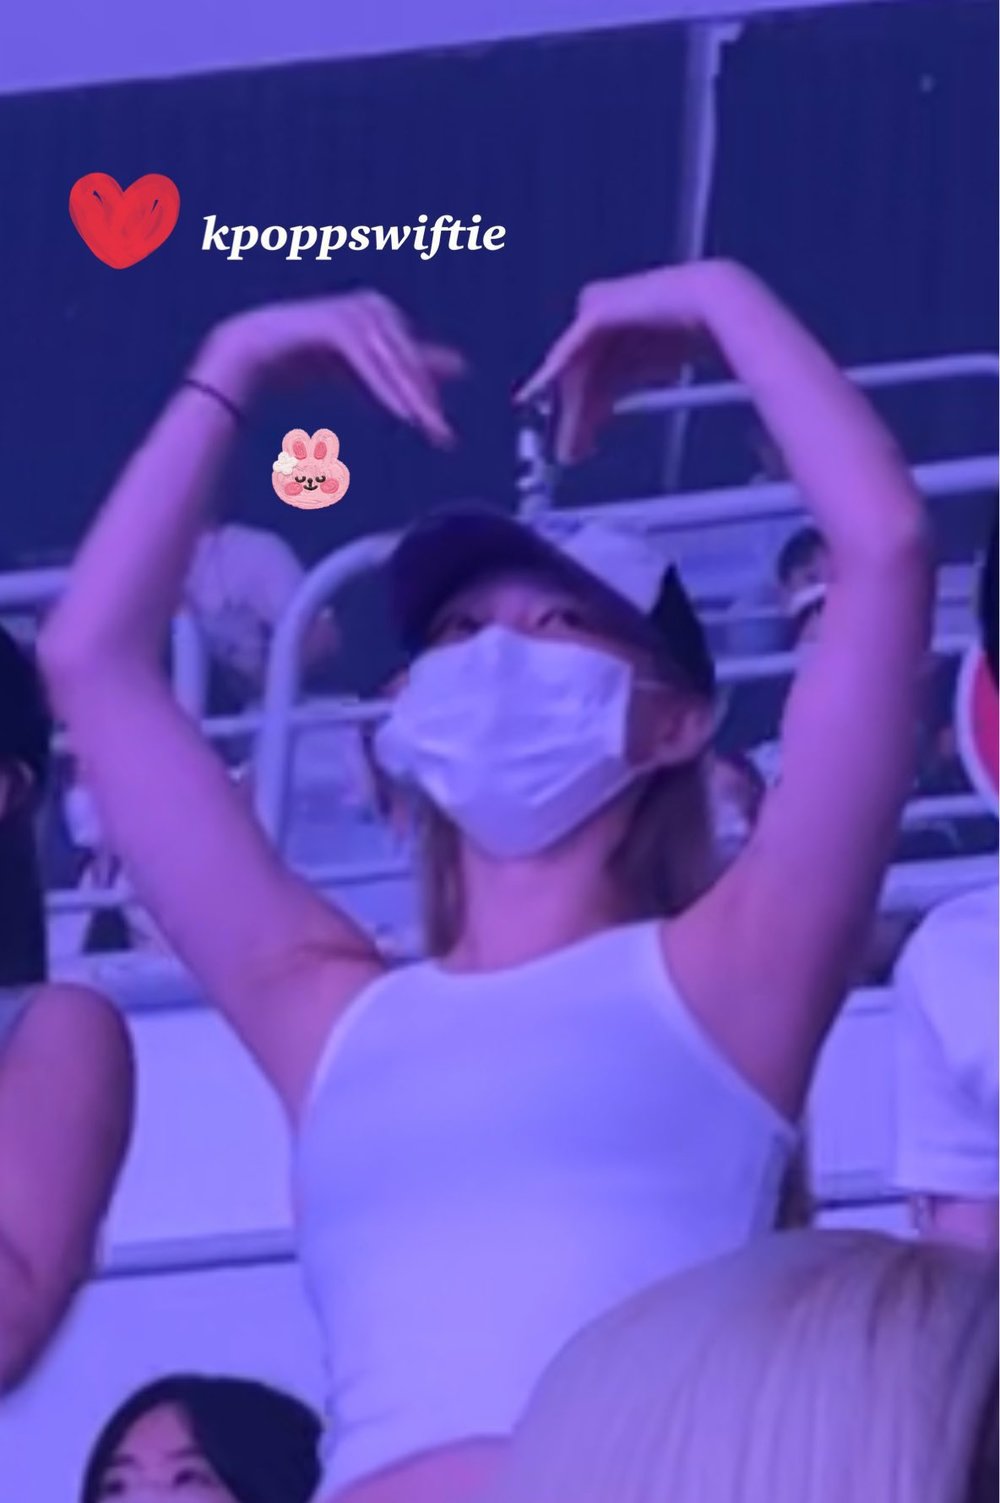  Nayeon cỗ vũ nhiệt tình tại concert của tiền bối. (Ảnh: Twitter @kpoppswiftie)